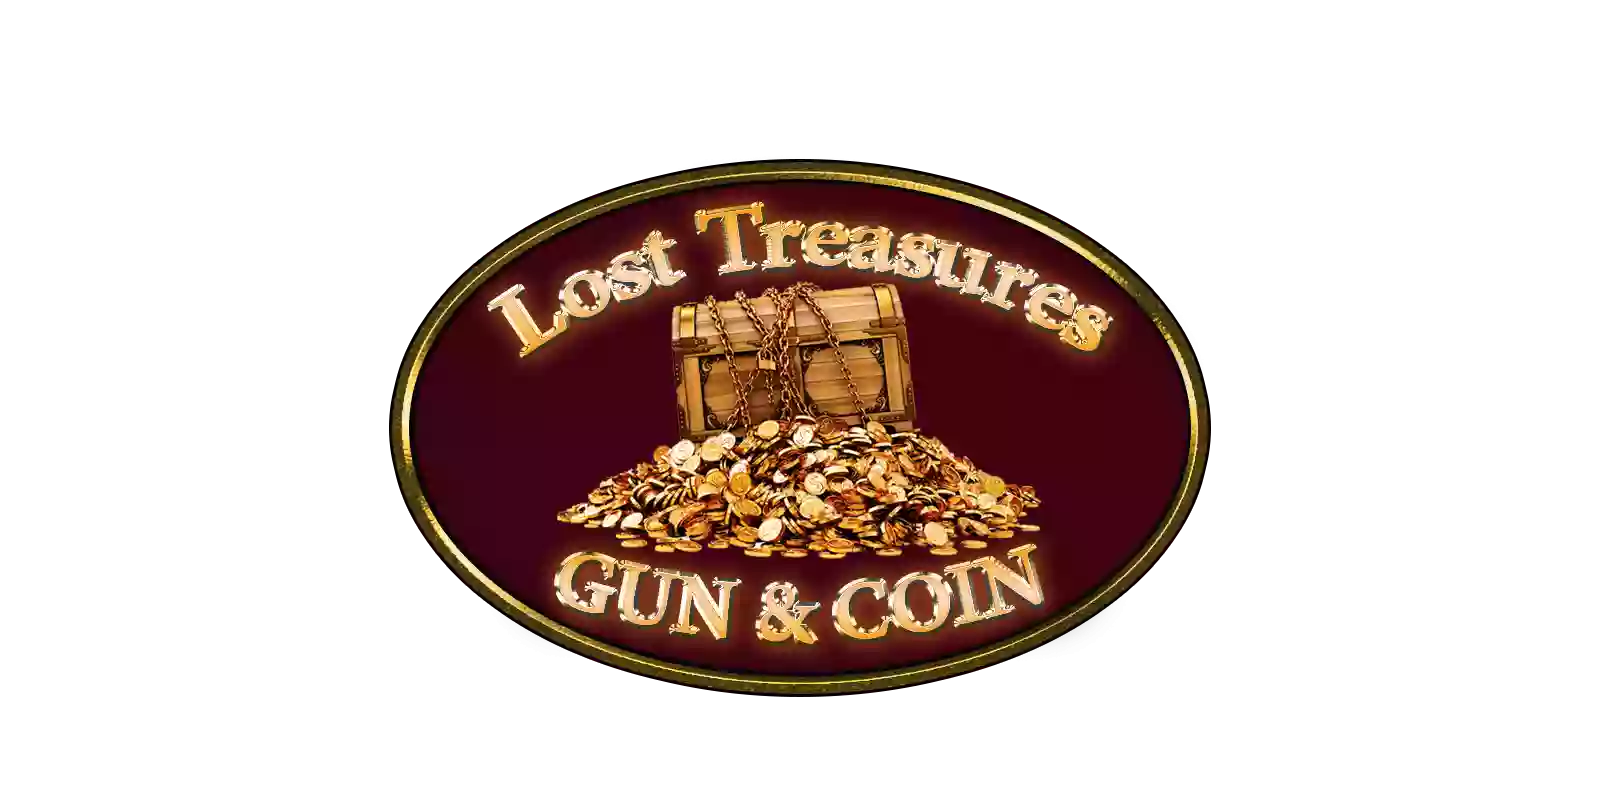 Lost Treasures Gun & Coin